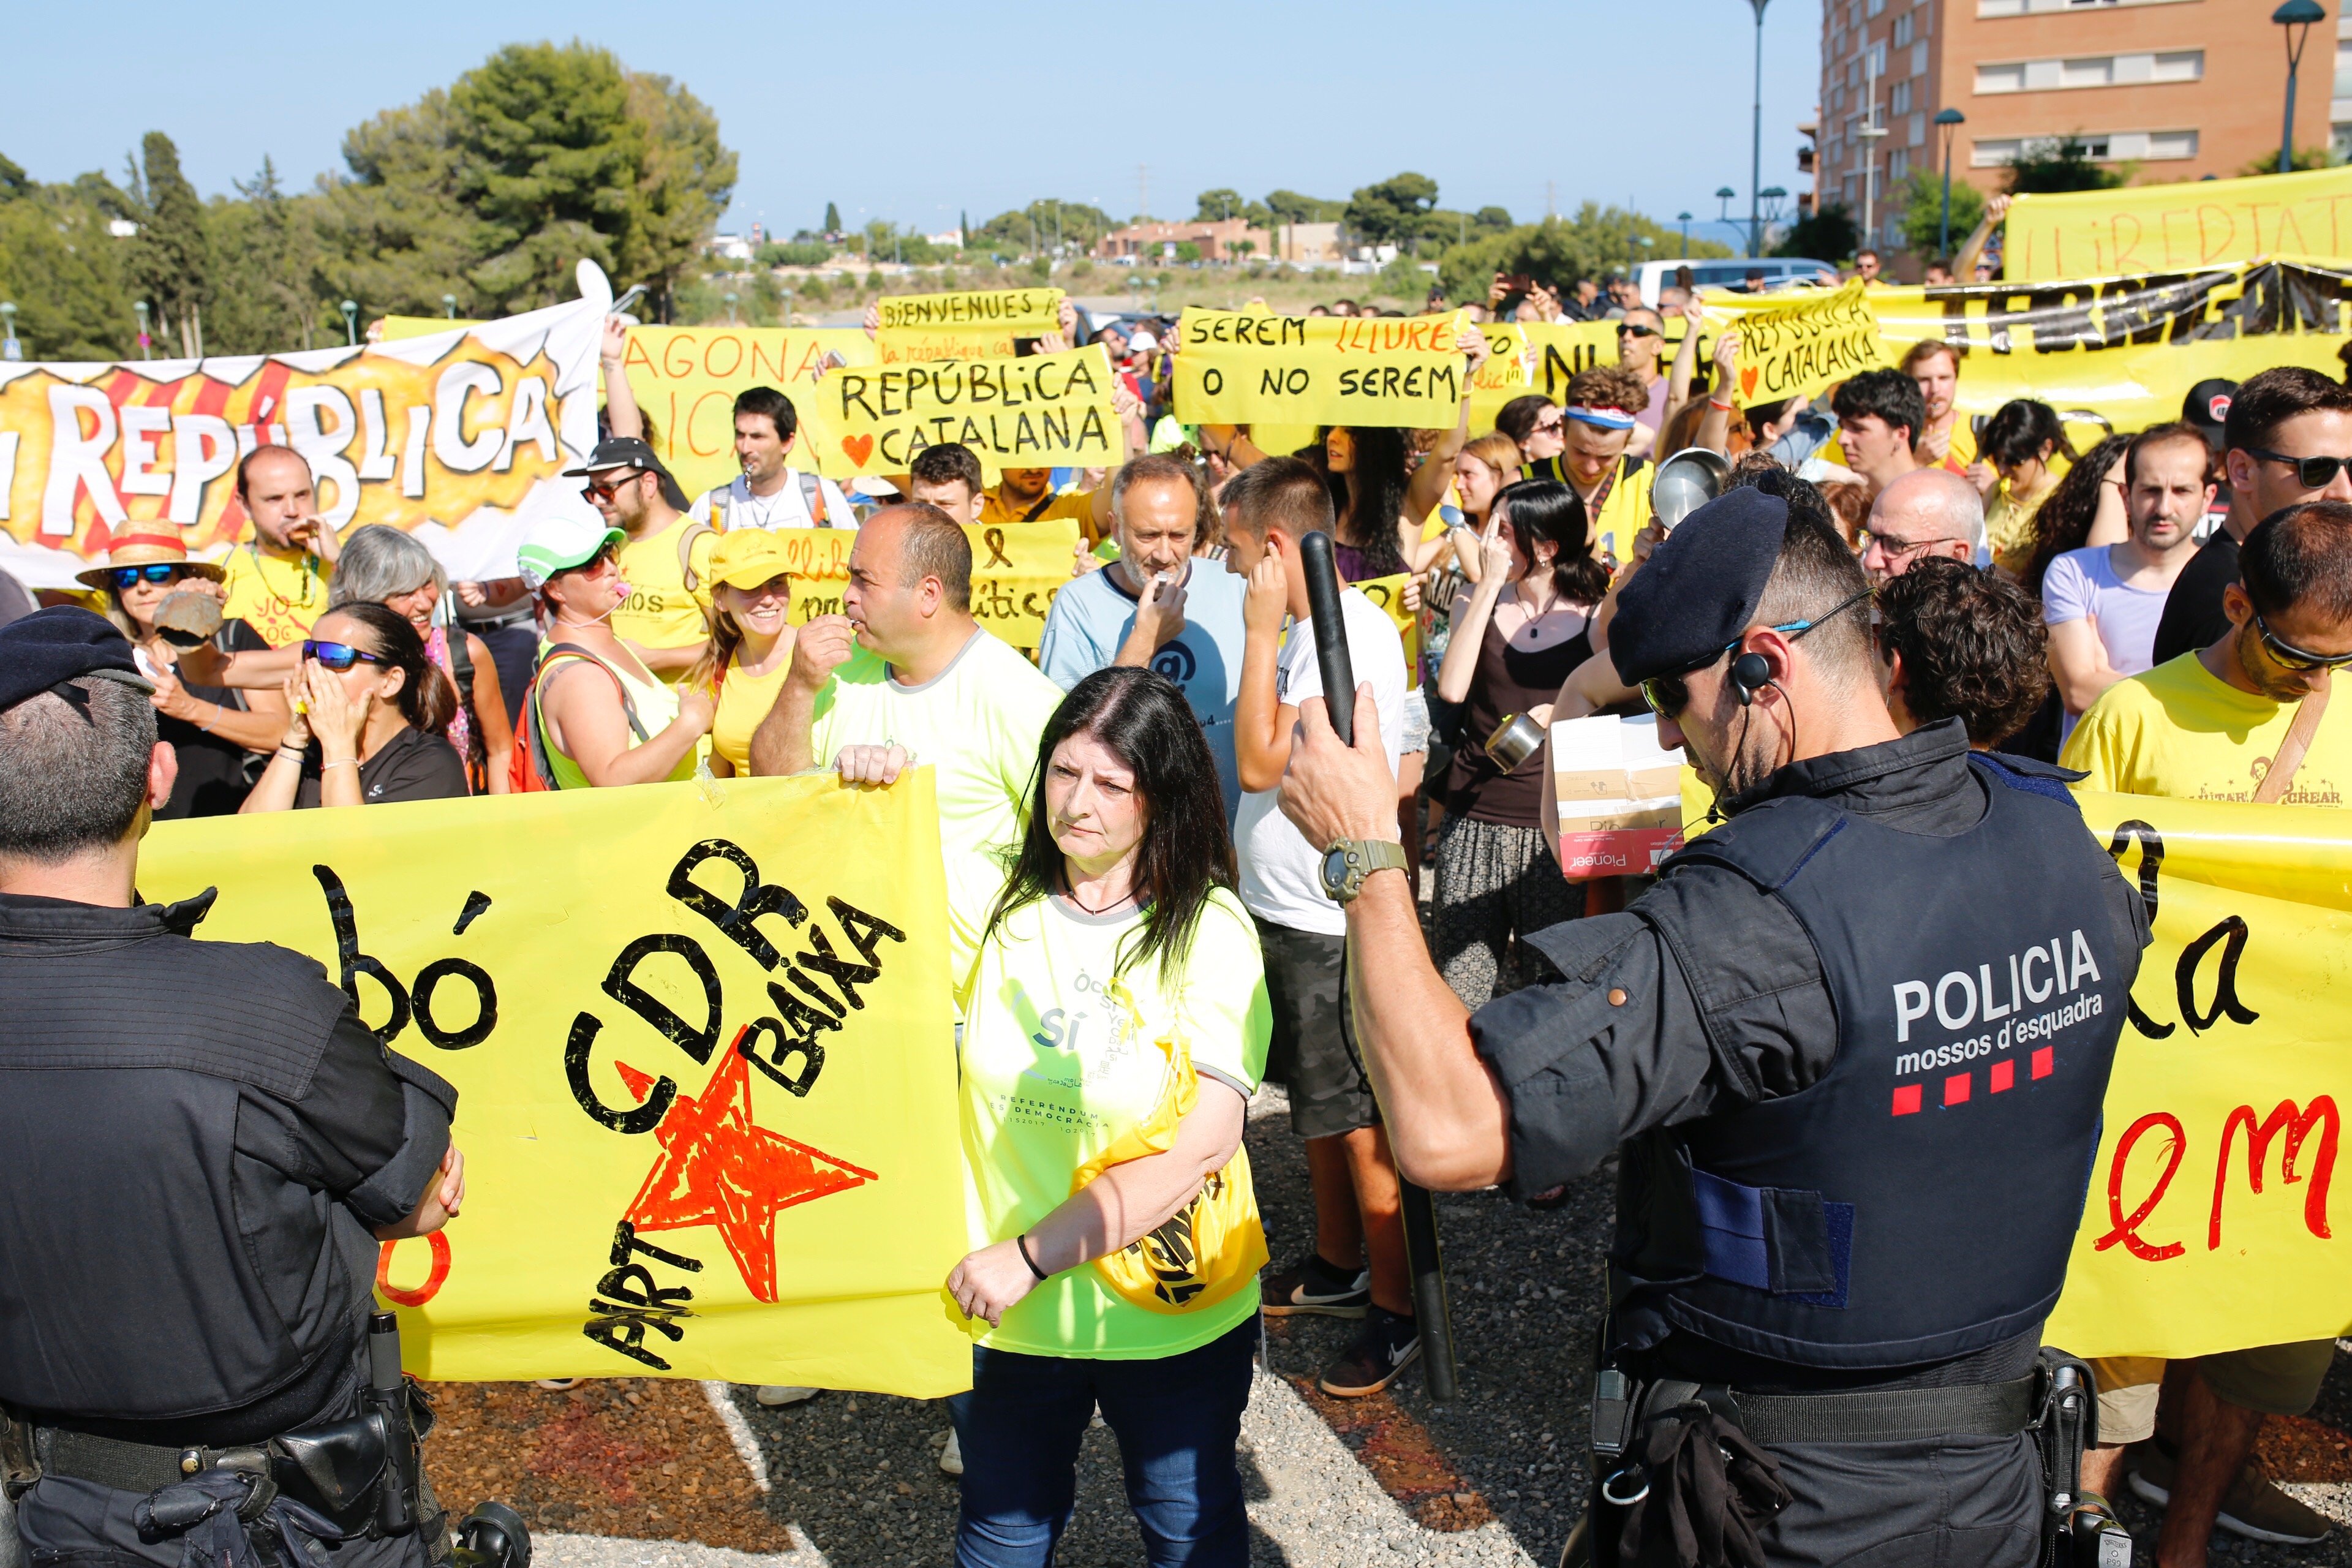 Les protestes del CDR i els espanyolistes escalfen l'arribada del Rei